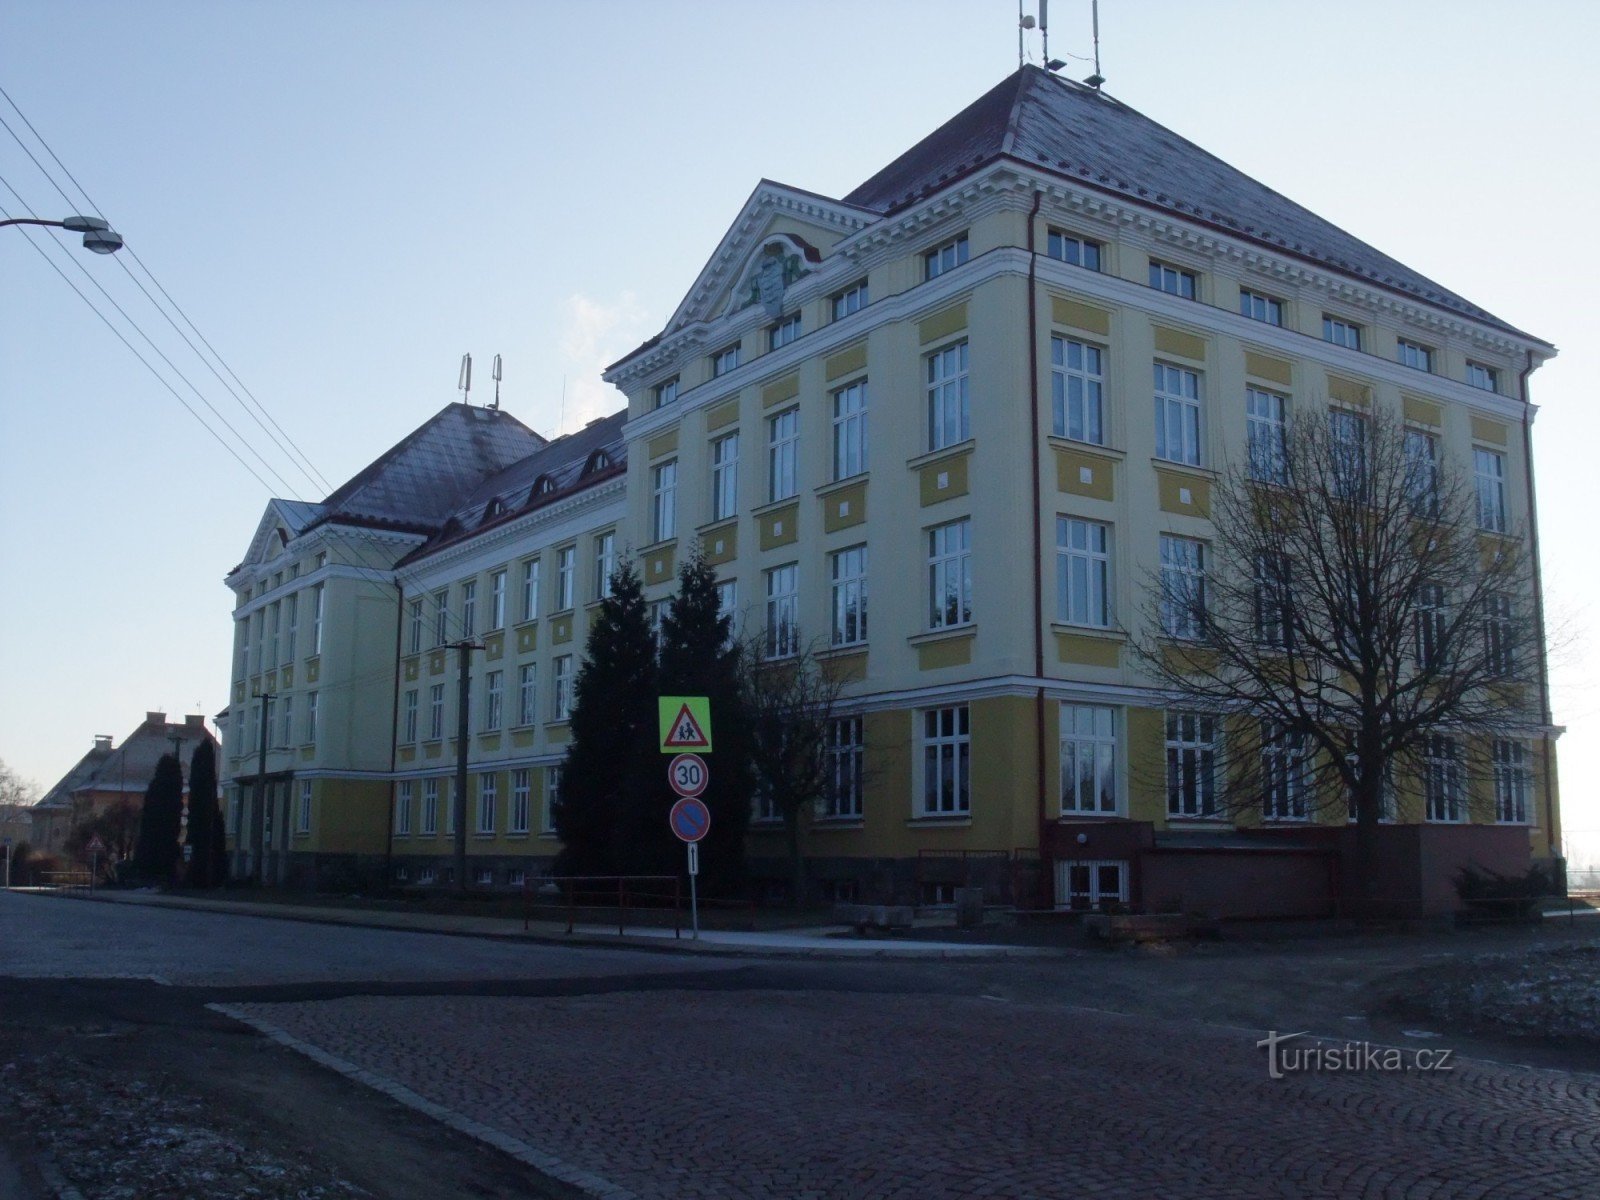 3ª escola primária, rua Okružní, Aš. À direita do edifício há um caminho que leva ao paloučka de Beneš